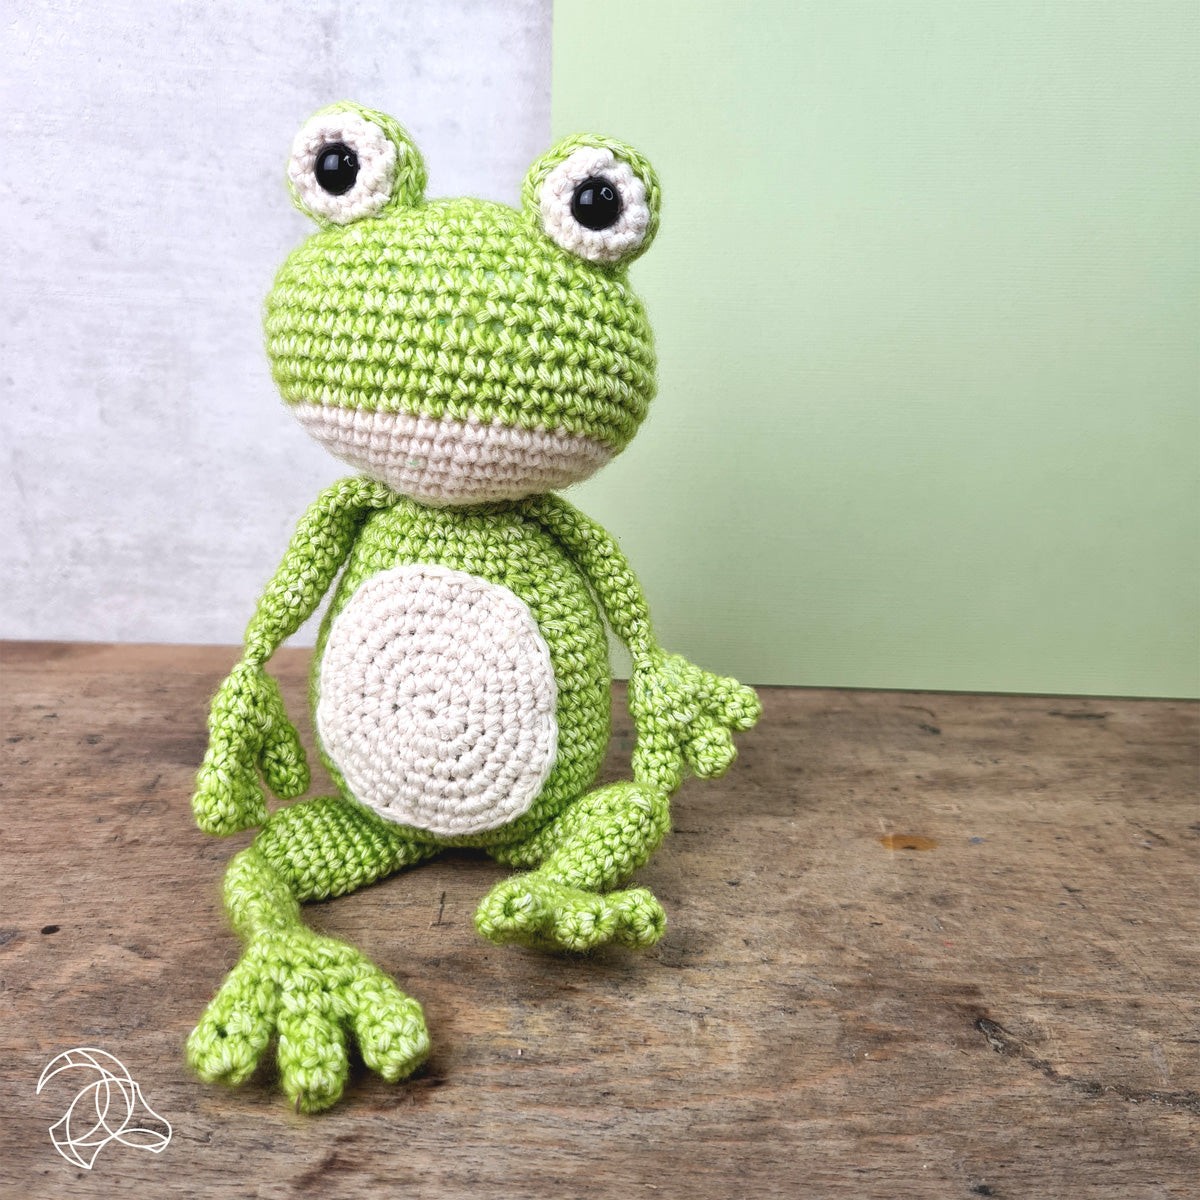 Vinny the Frog Crochet Kit from Hardicraft